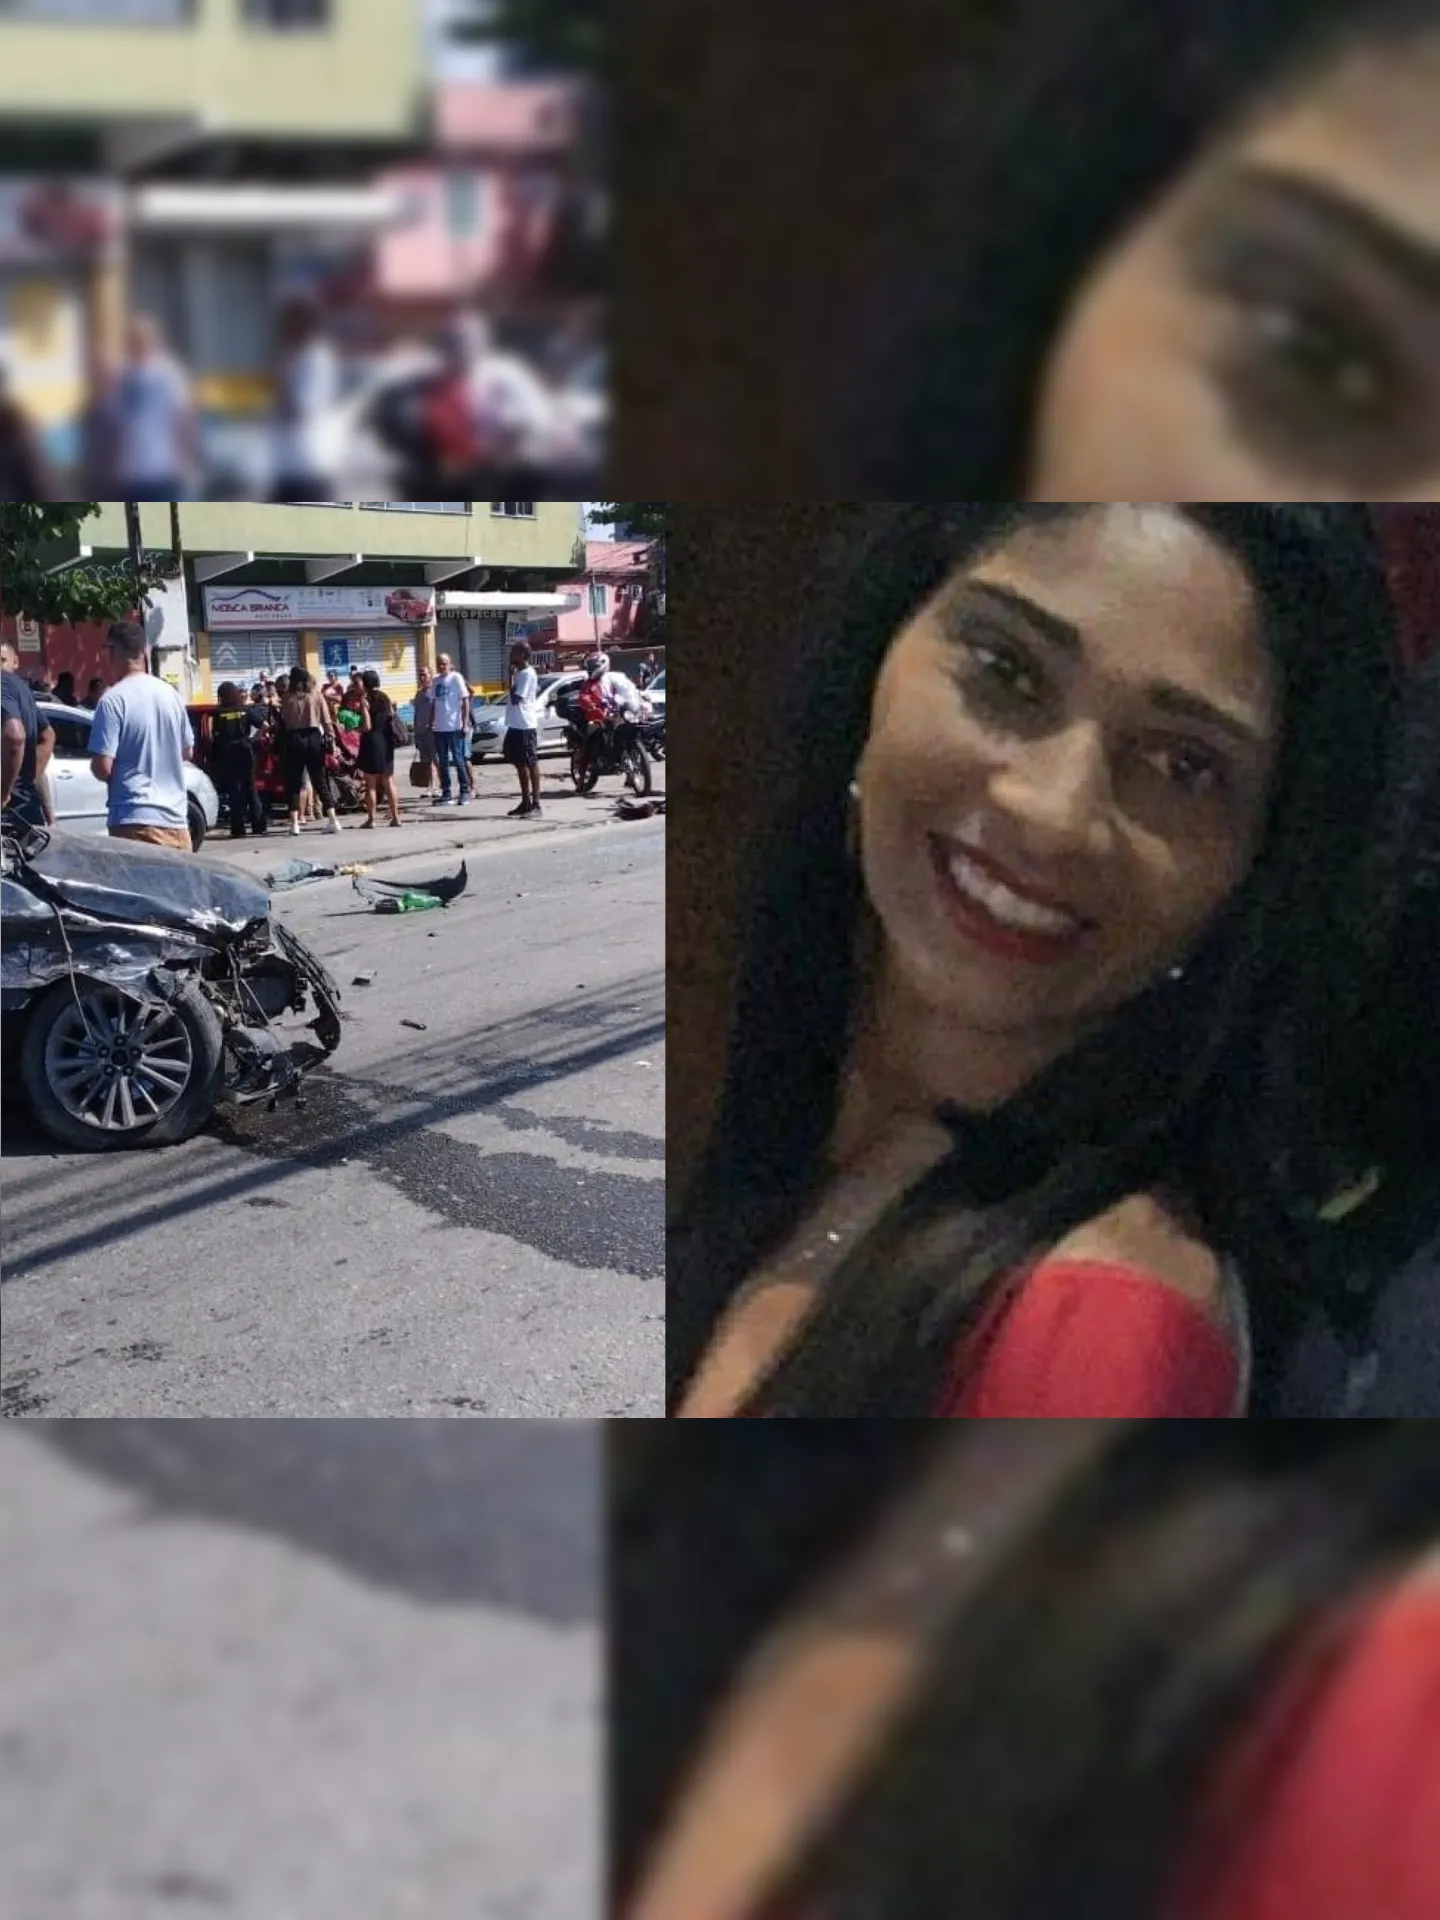 Adriana Lourenço, de 41 anos, estava no banco do carona tentando socorrer um bebê que estava em convulsão, quando sofreu um acidente e ficou presa nas ferragens